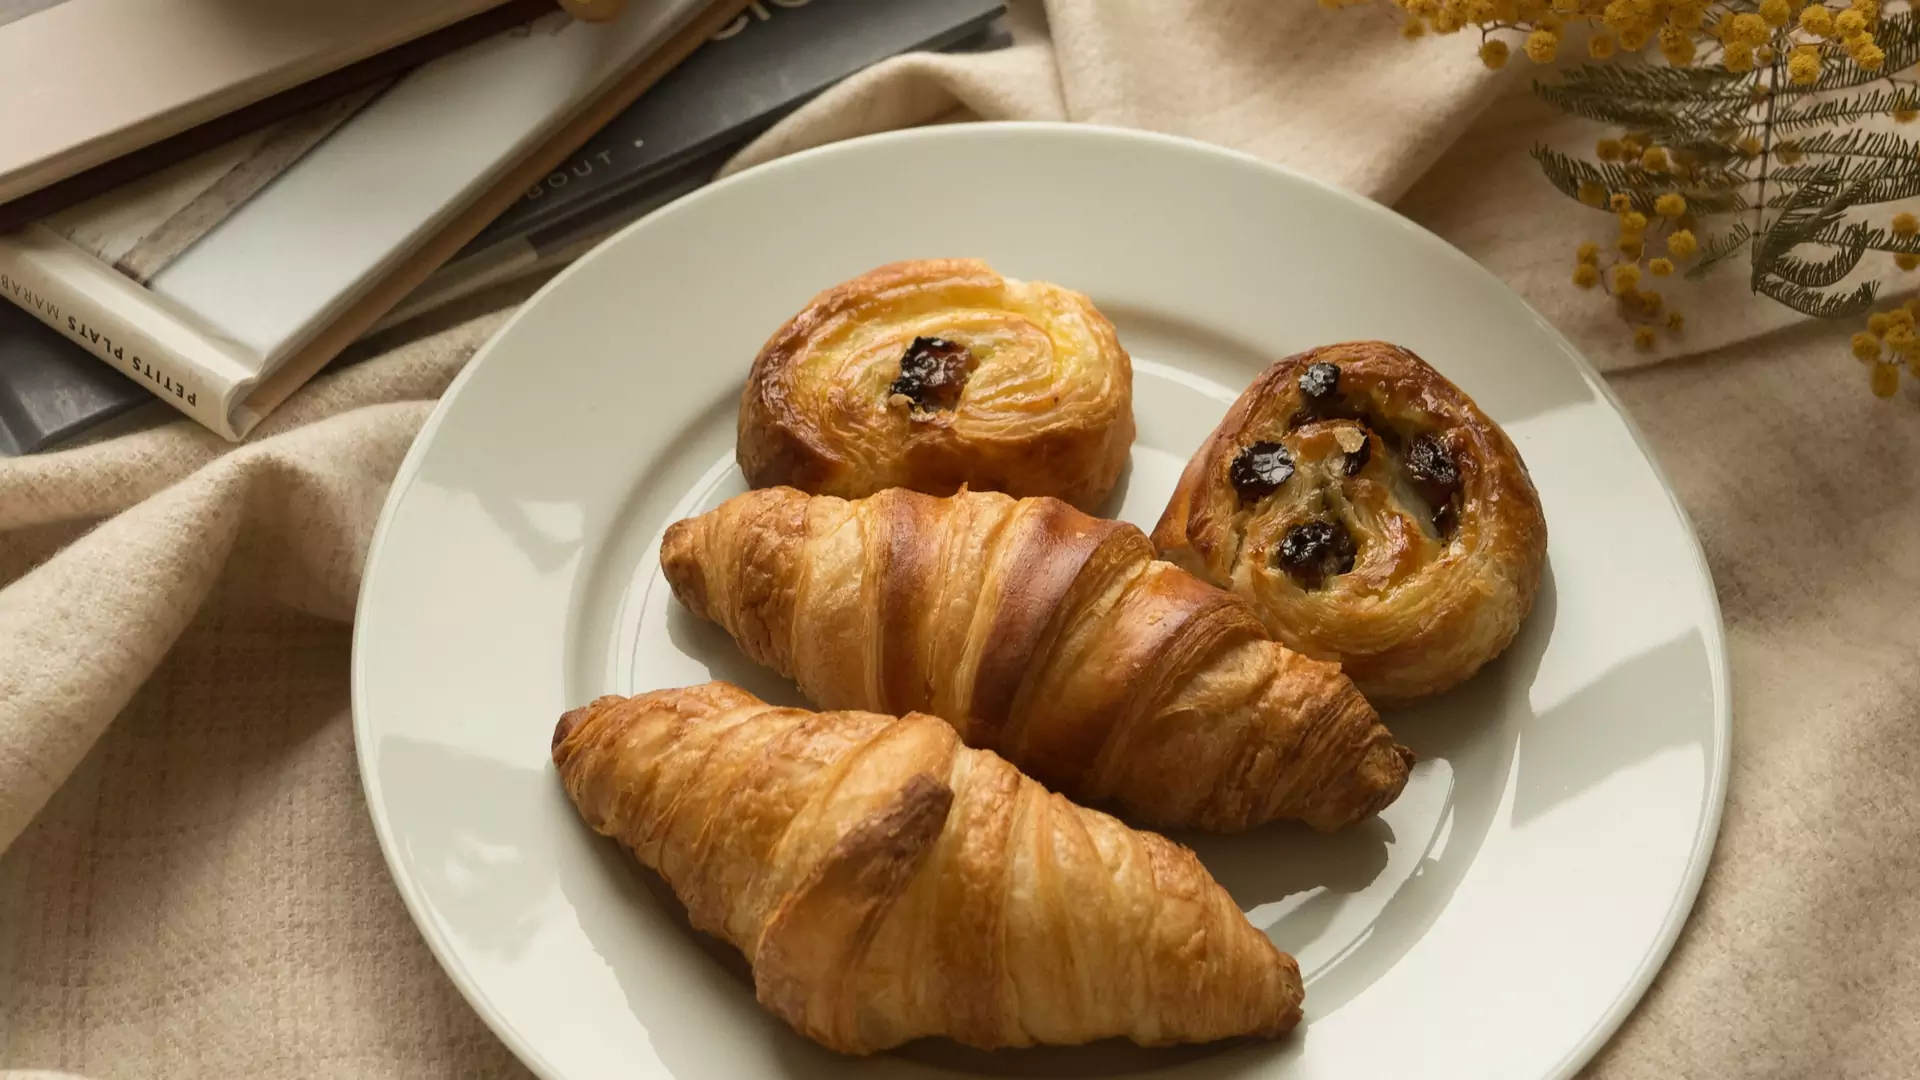 Pyszne ciasteczka francuskie ze śliwkami - prosty przepis na szybki deser